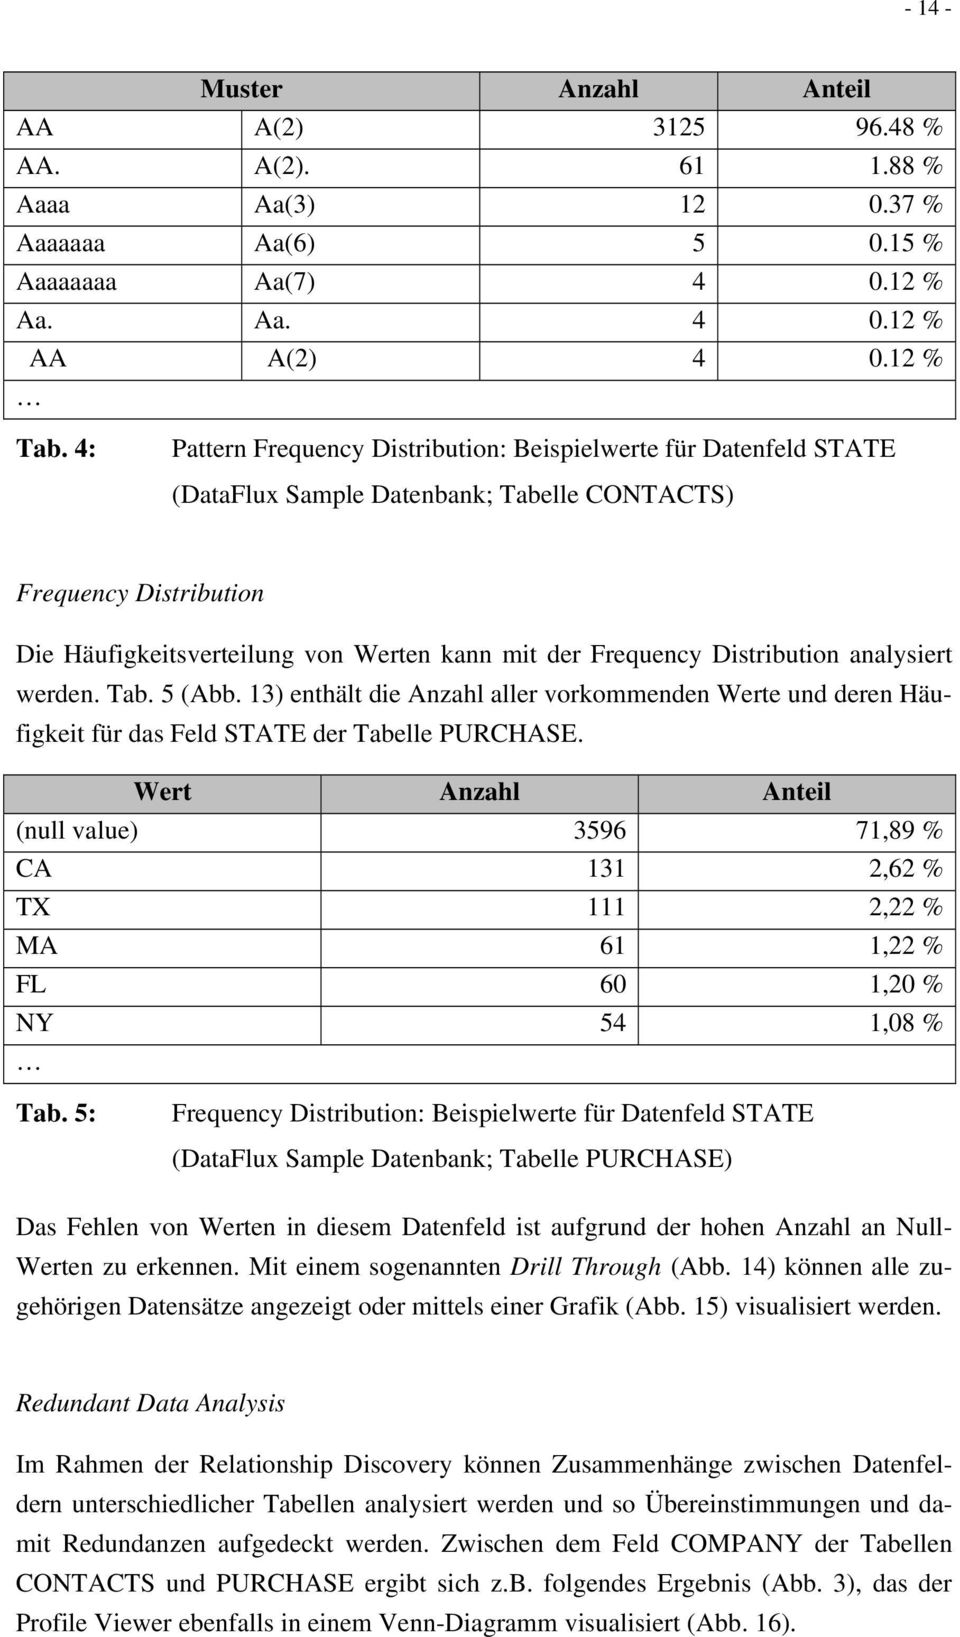 Distribution analysiert werden. Tab. 5 (Abb. 13) enthält die Anzahl aller vorkommenden Werte und deren Häufigkeit für das Feld STATE der Tabelle PURCHASE.